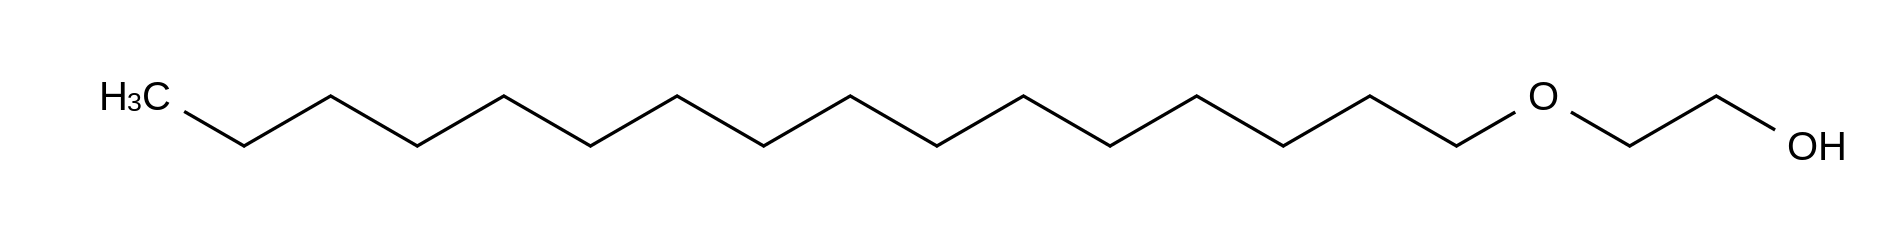 2-Hexadecyloxyethanol